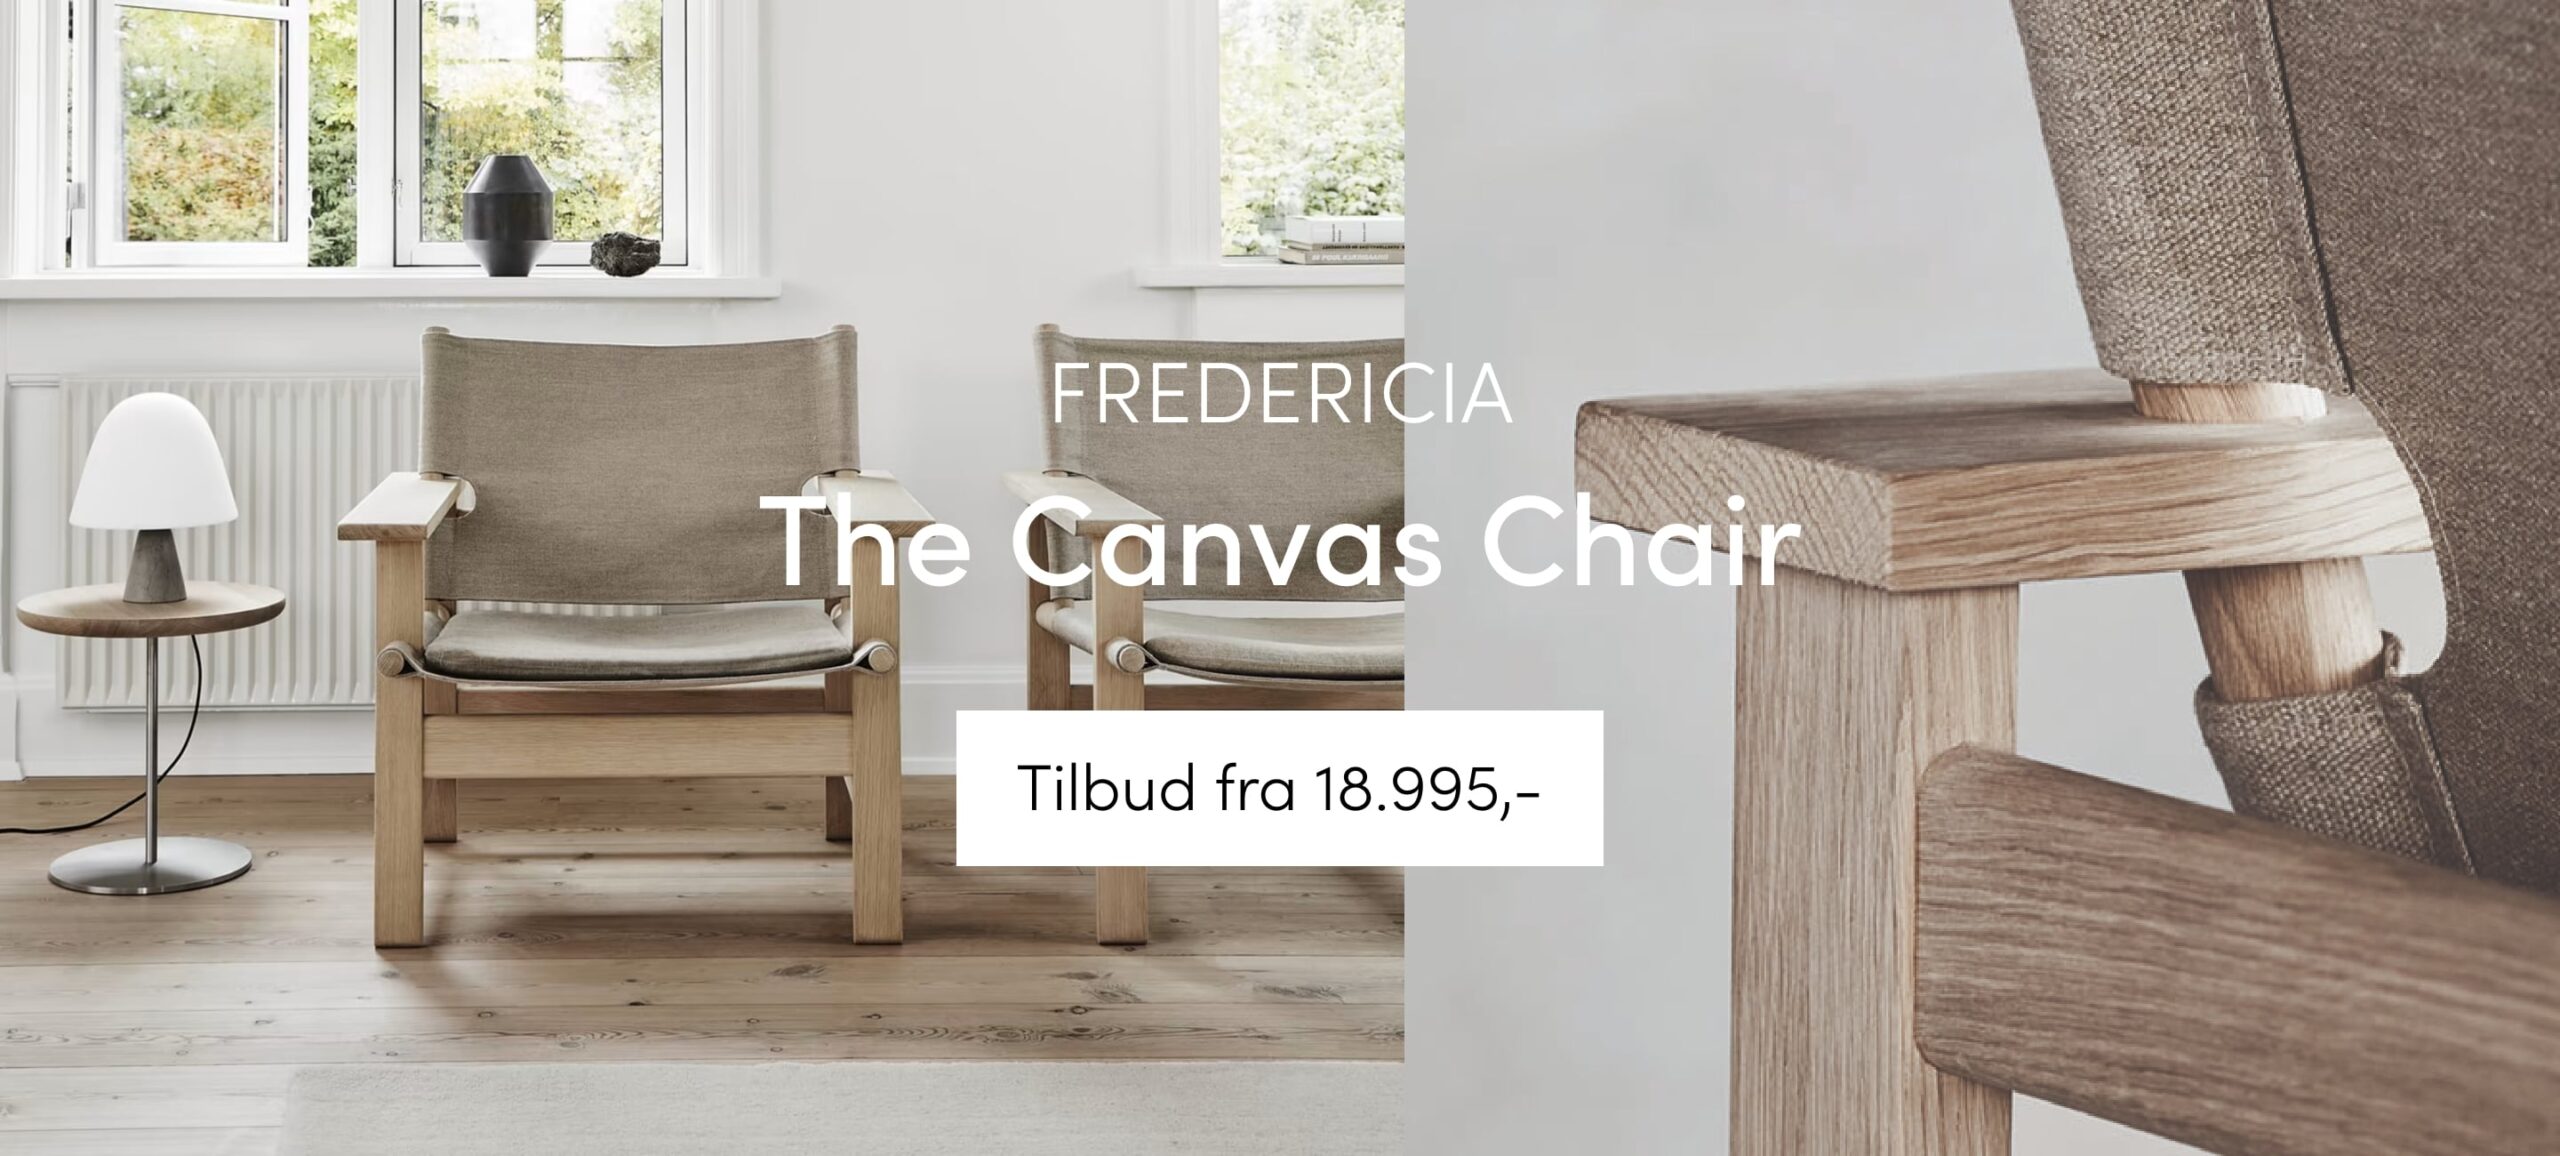 Tilbud på The Canvas Chair fra Fredericia